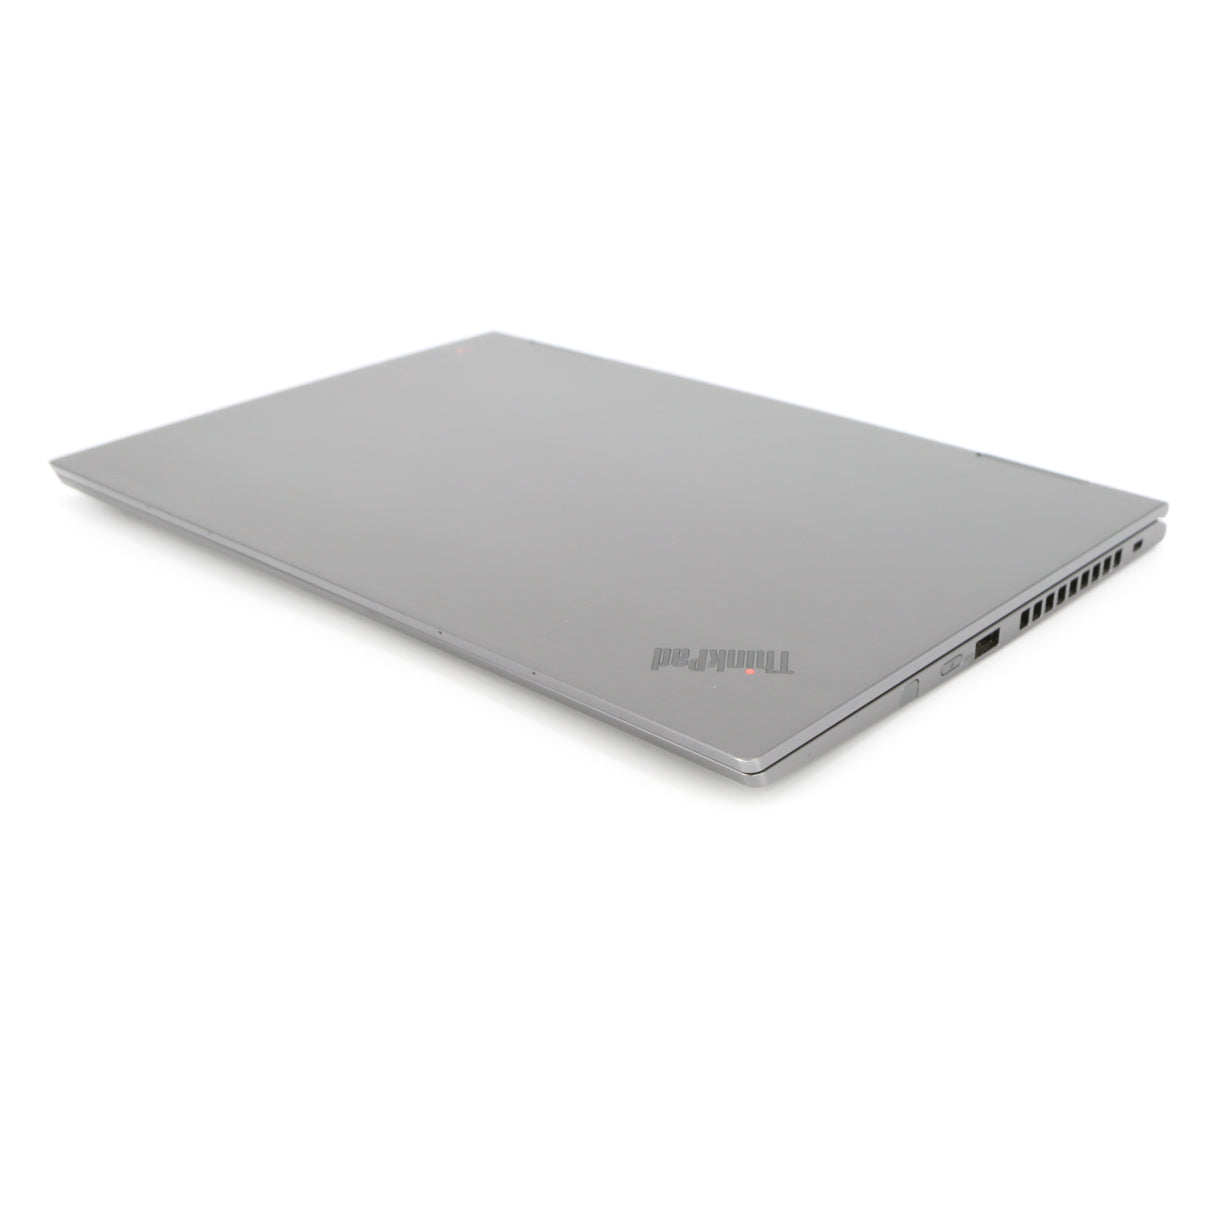 Lenovo ThinkPad X1 Yoga Gen 4: 8th Gen i7, Touch, 16GB RAM, 256GB 1.4kg Warranty - GreenGreen Store